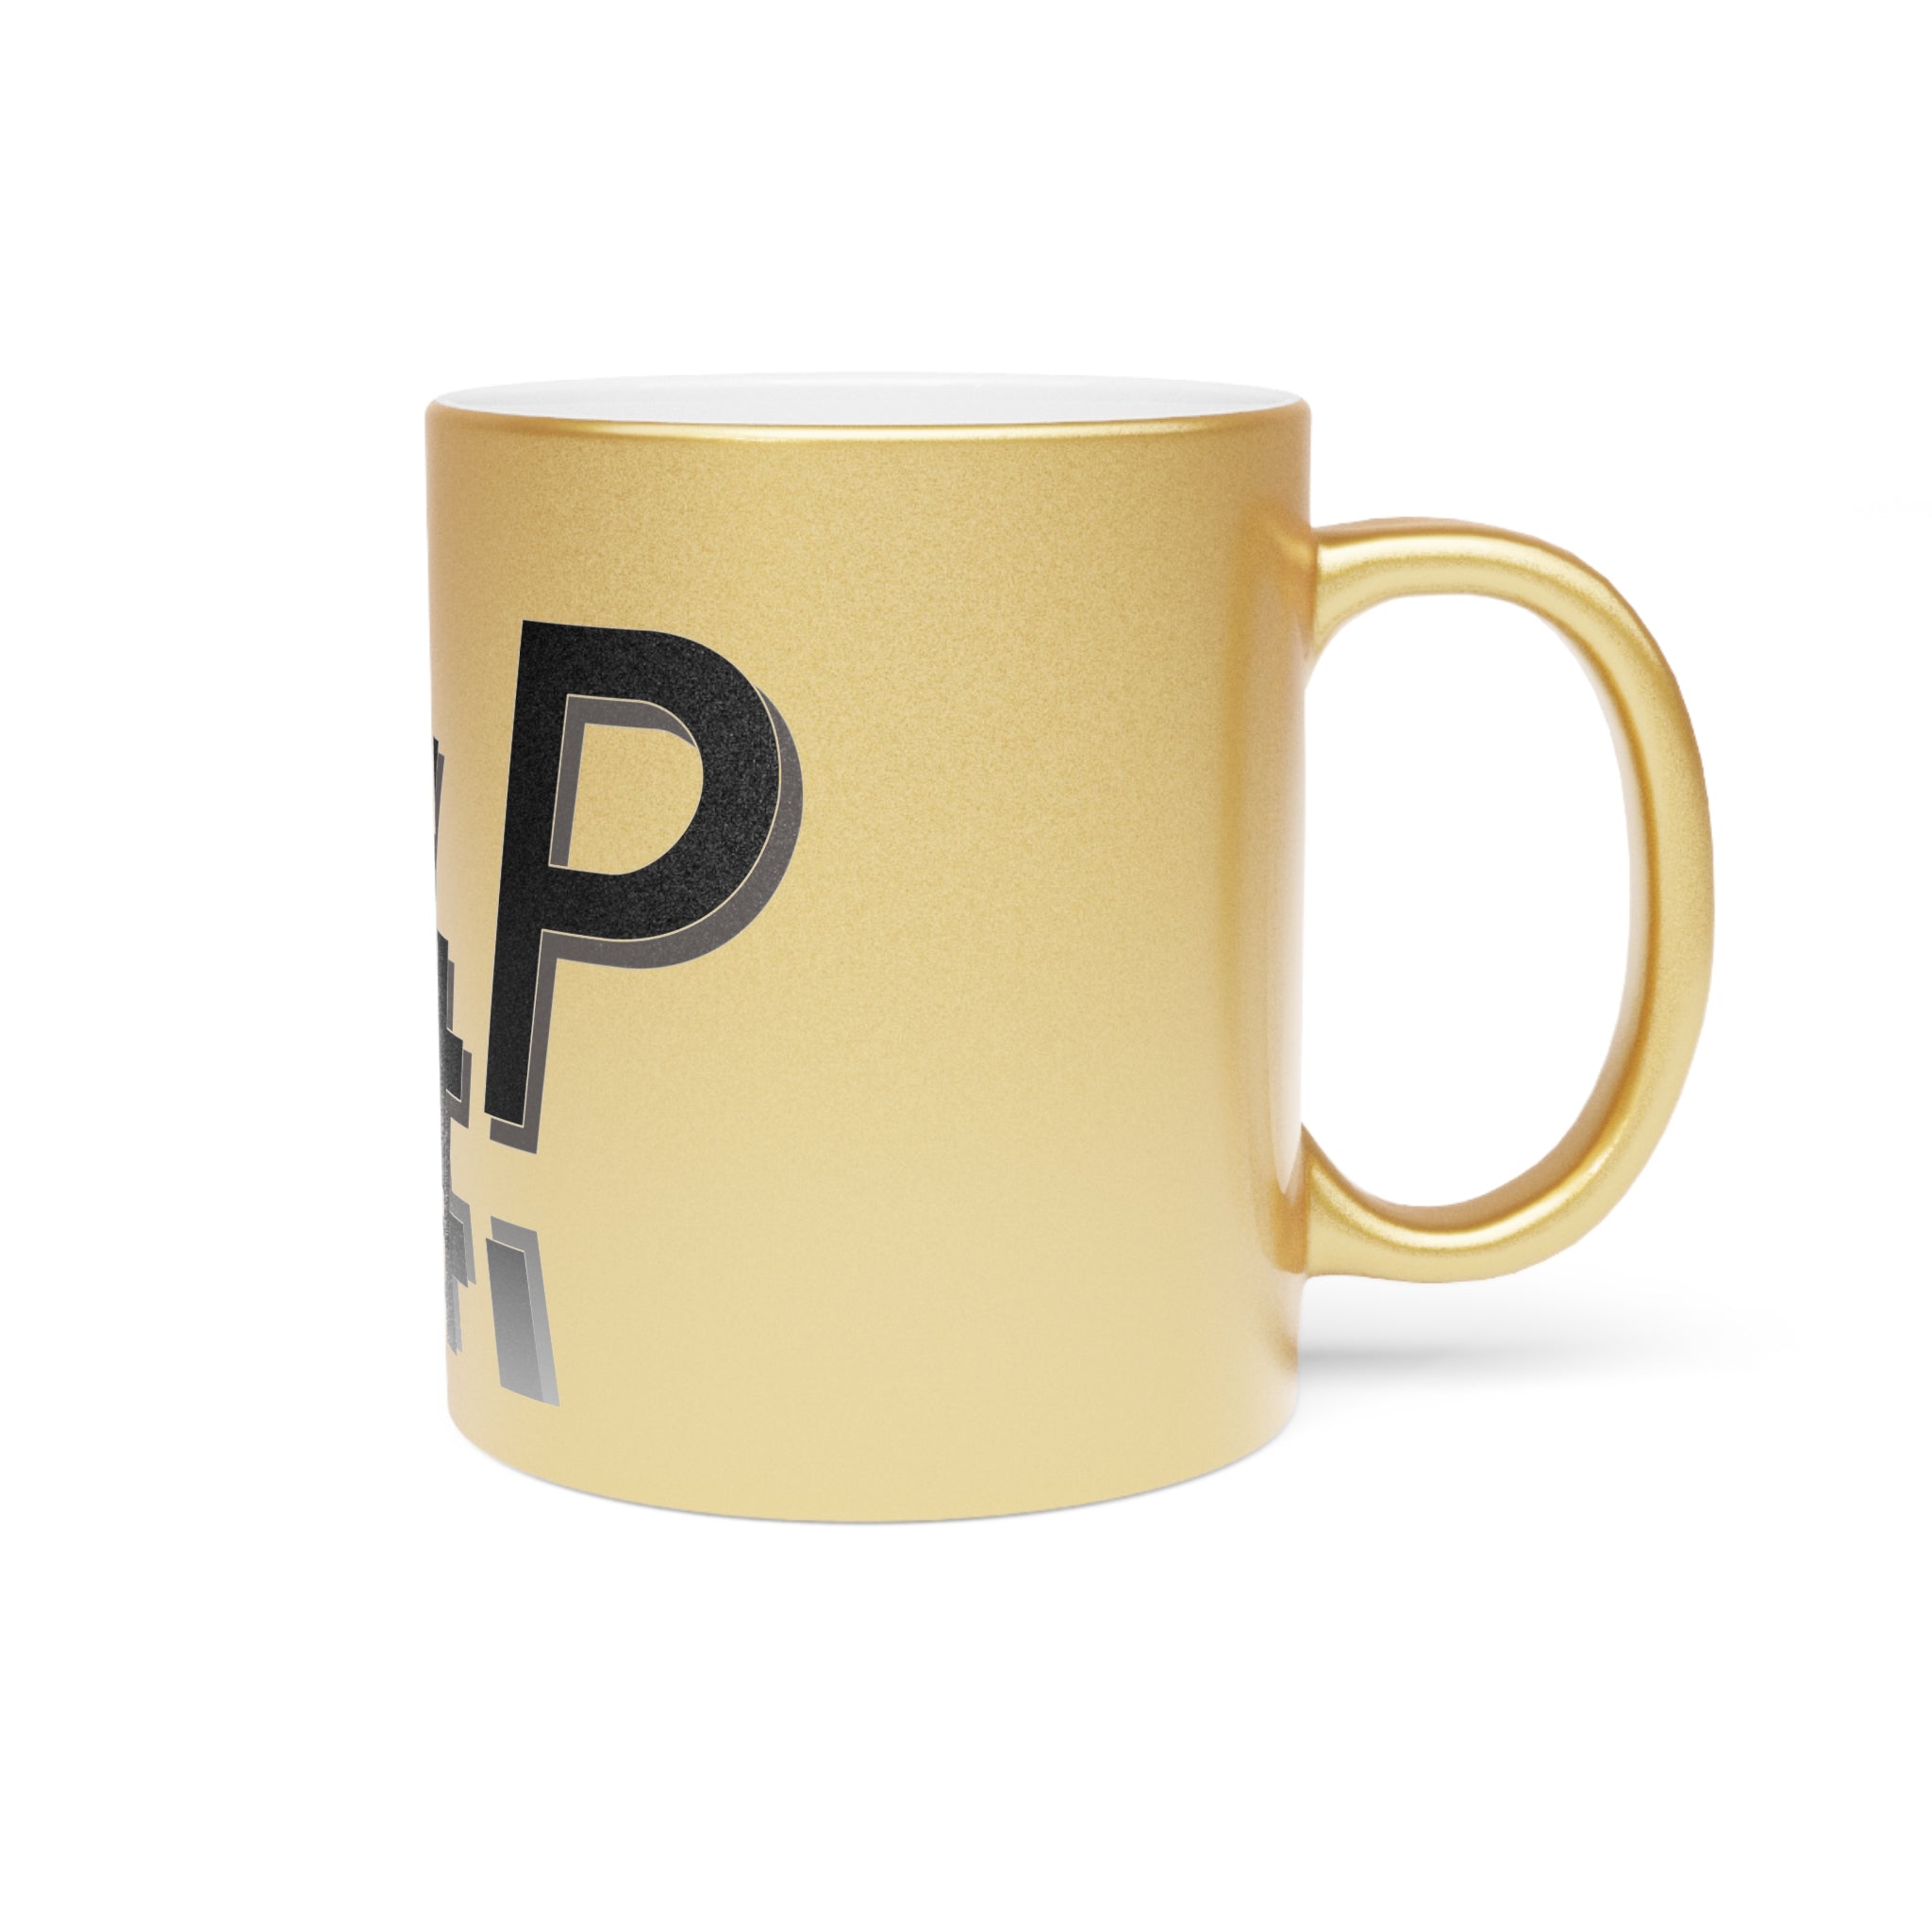 R4P Metallic Mug (Gold\Silver)